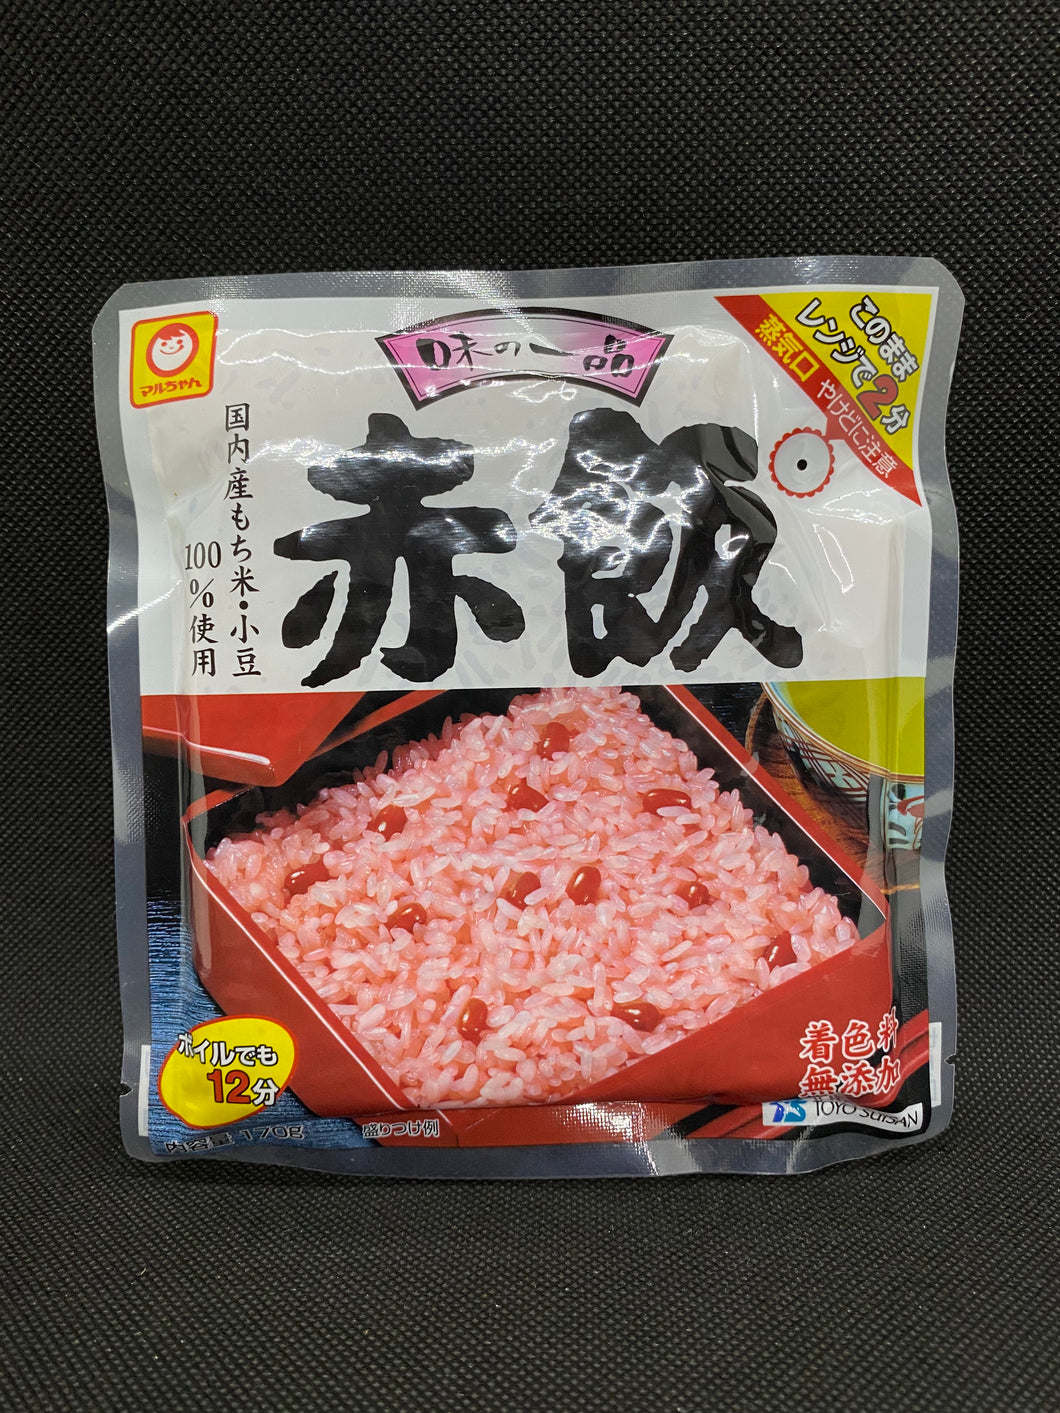 マルちゃん 赤飯 (170g)